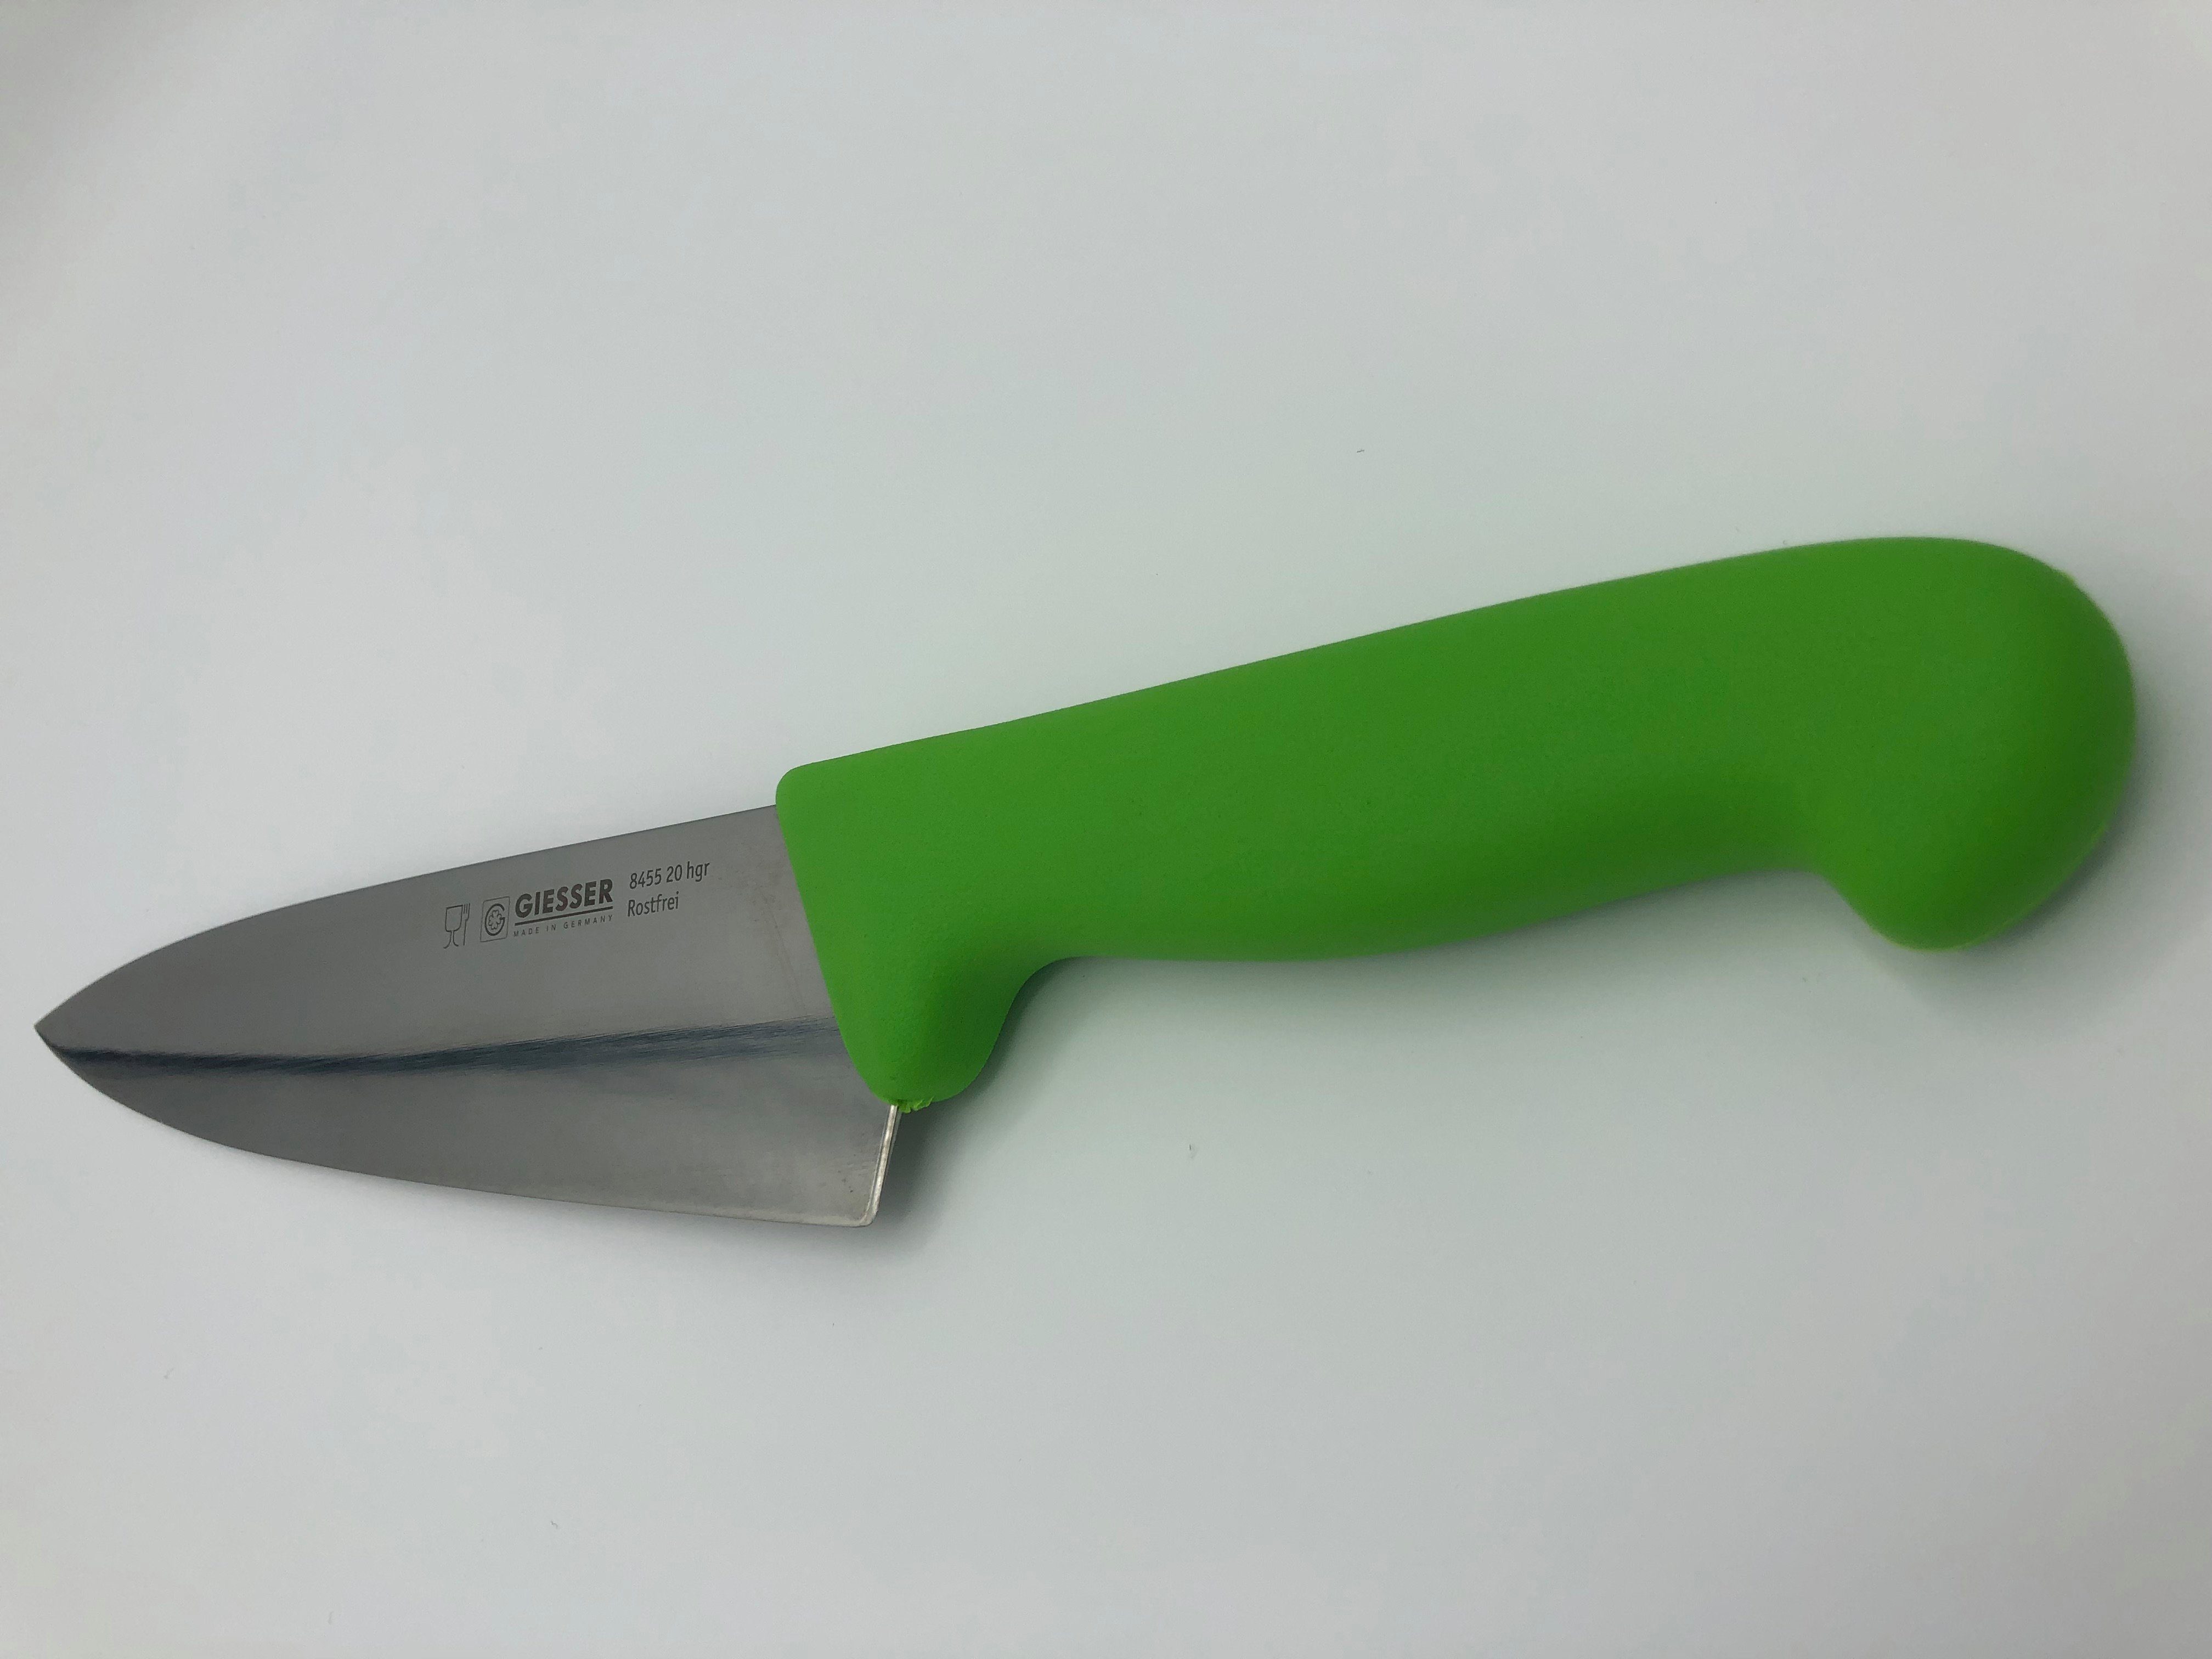 Kochmesser Messer 8455, Küchenmesser hellgrün scharf, Handabzug, Giesser jede Form, Ideal Küche Rostfrei, breit breite für